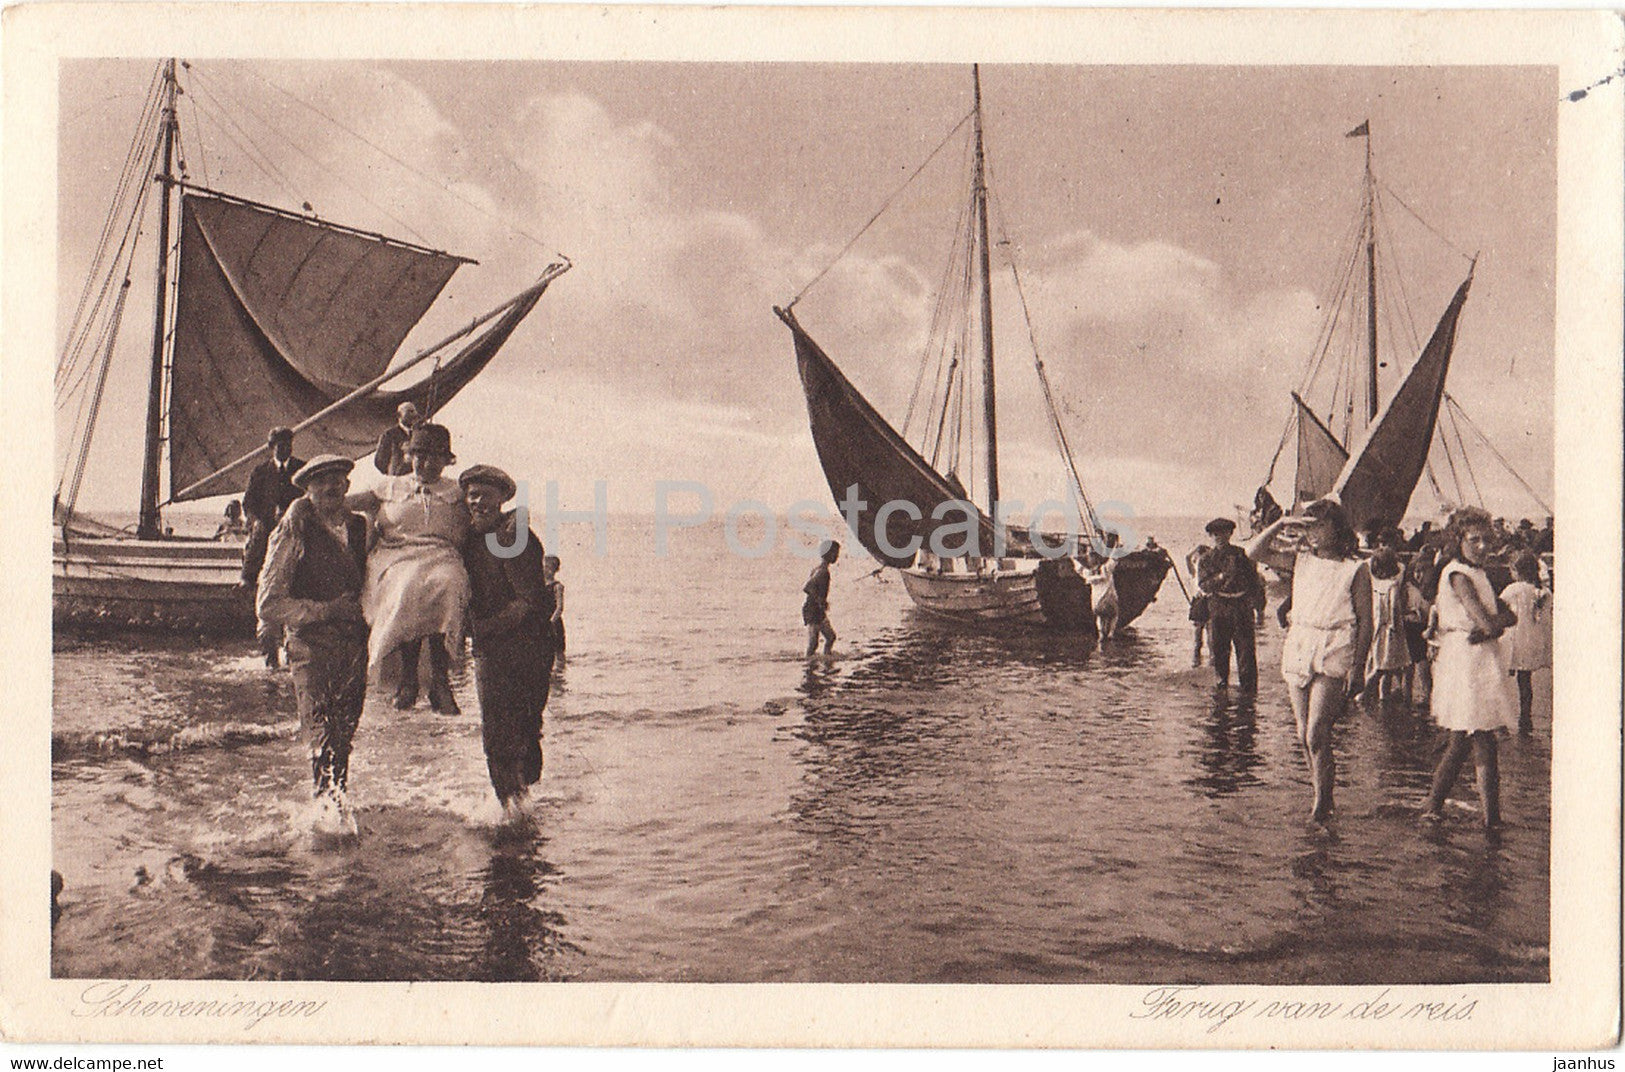 Scheveningen - Ferug van de reis - sailing boat - 262 - old postcard - 1929 - Belgium - used - JH Postcards